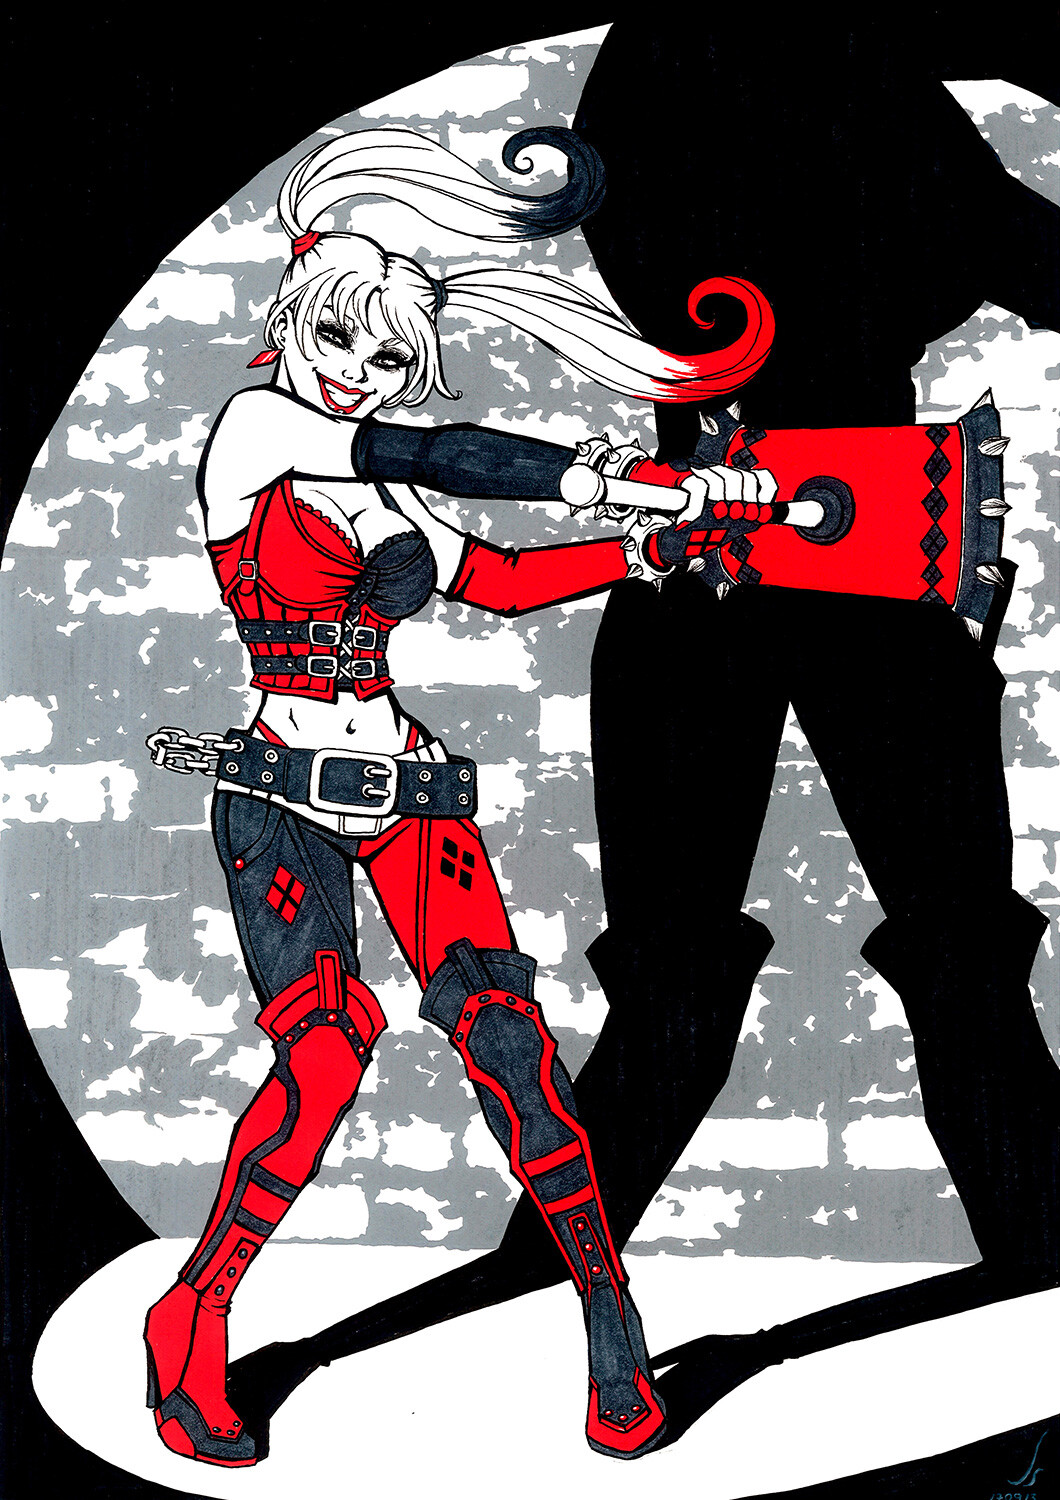 Arkham City's Harley Quinn